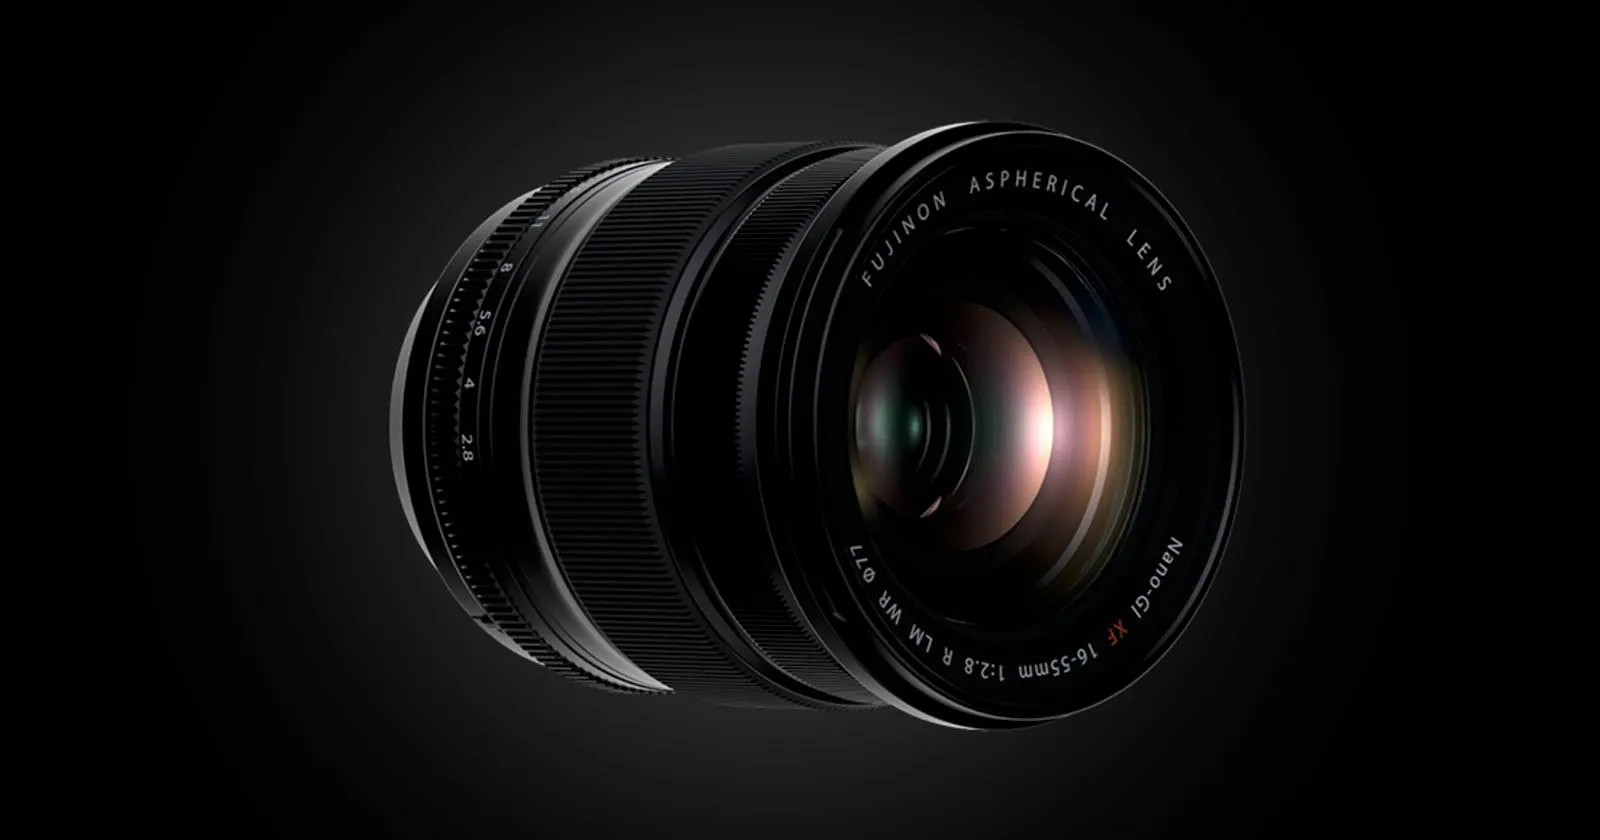 Fujifilm tung cập nhật firmware sửa lỗi cho ống kính XF 16-55mm F2.8 R LM WR